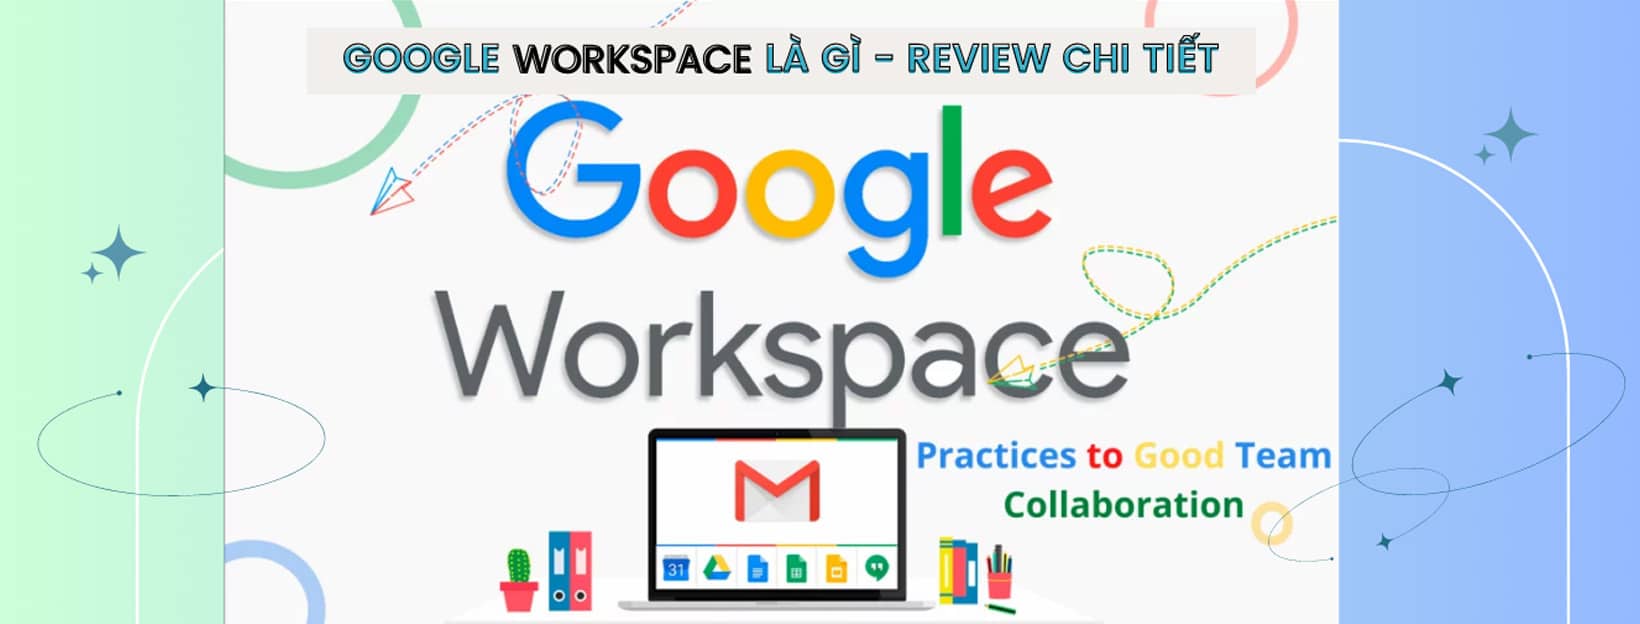 google workspace là gì đánh giá chi tiết